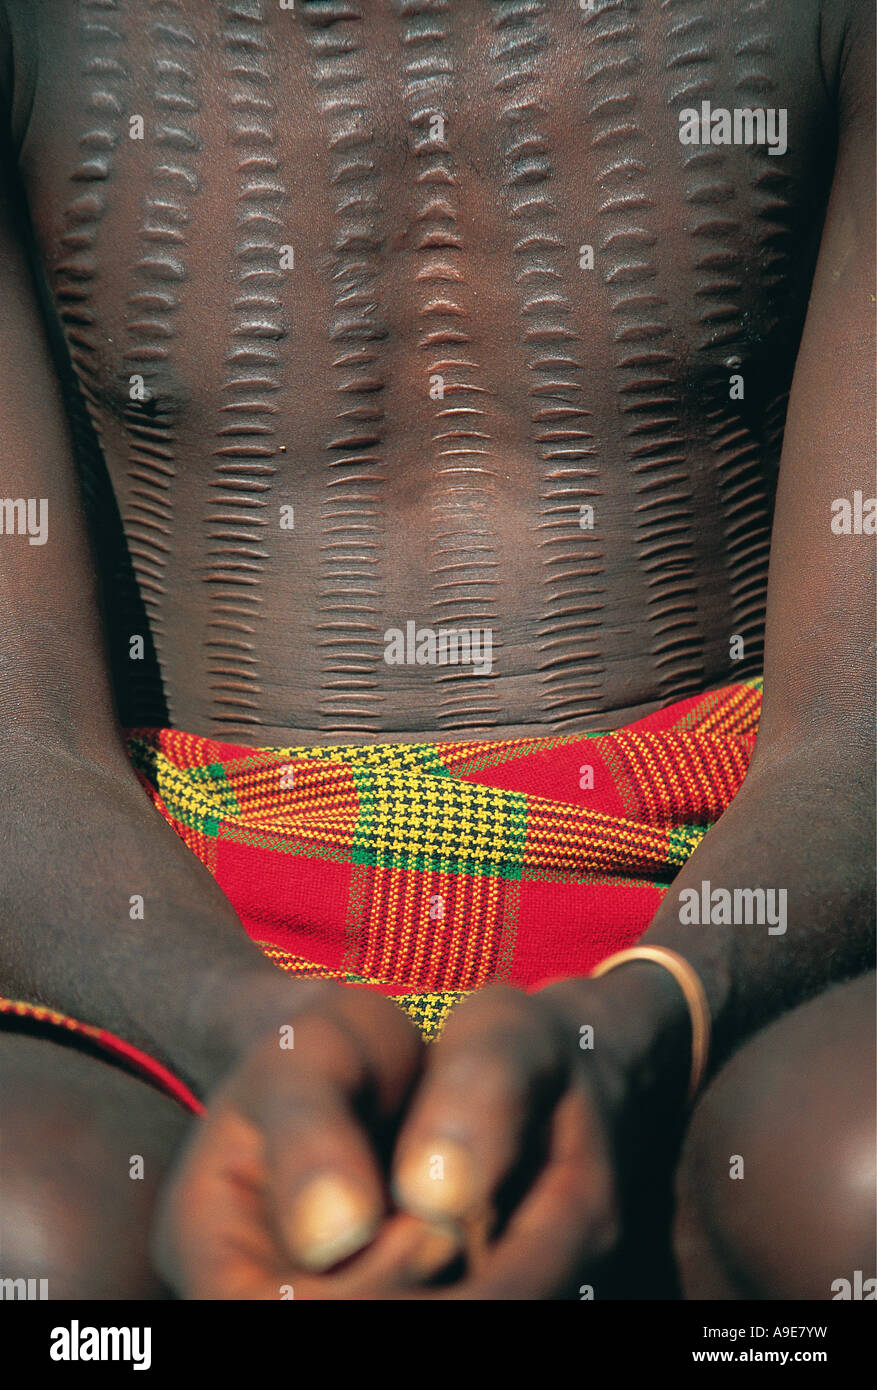 Body scarring on Gheleb man Ethiopia Stock Photo